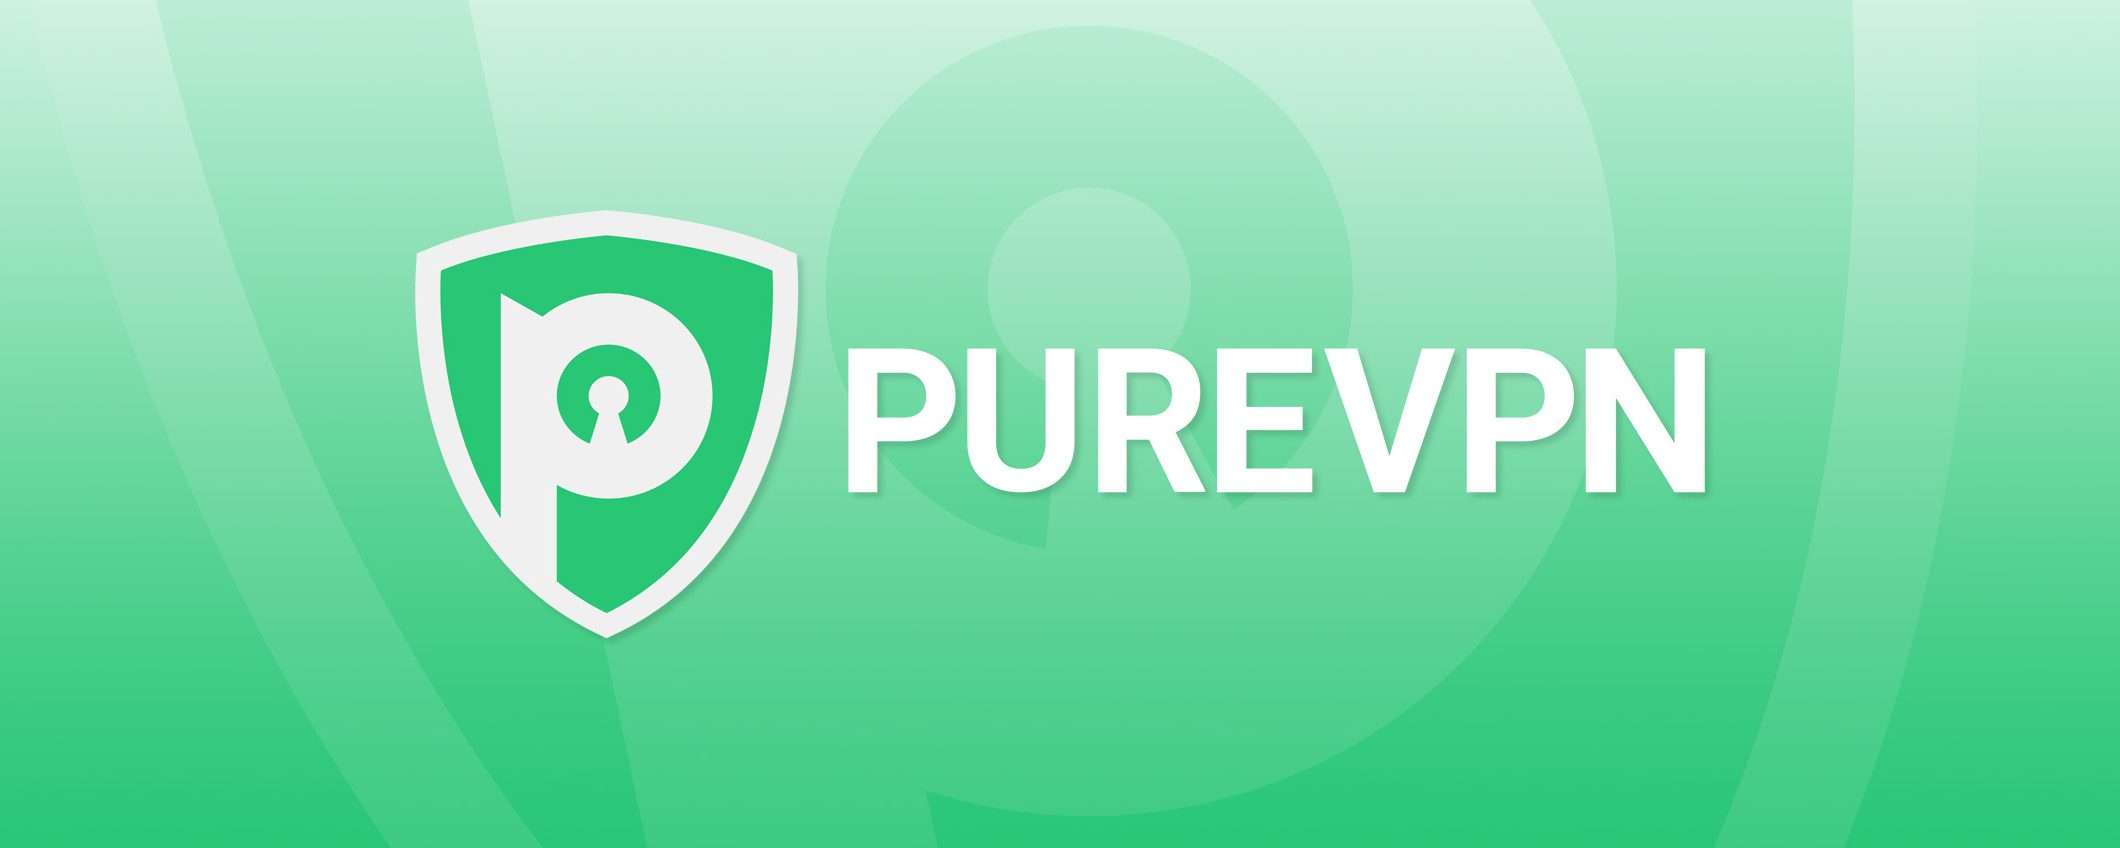 PureVPN compie 15 anni: la storia della VPN